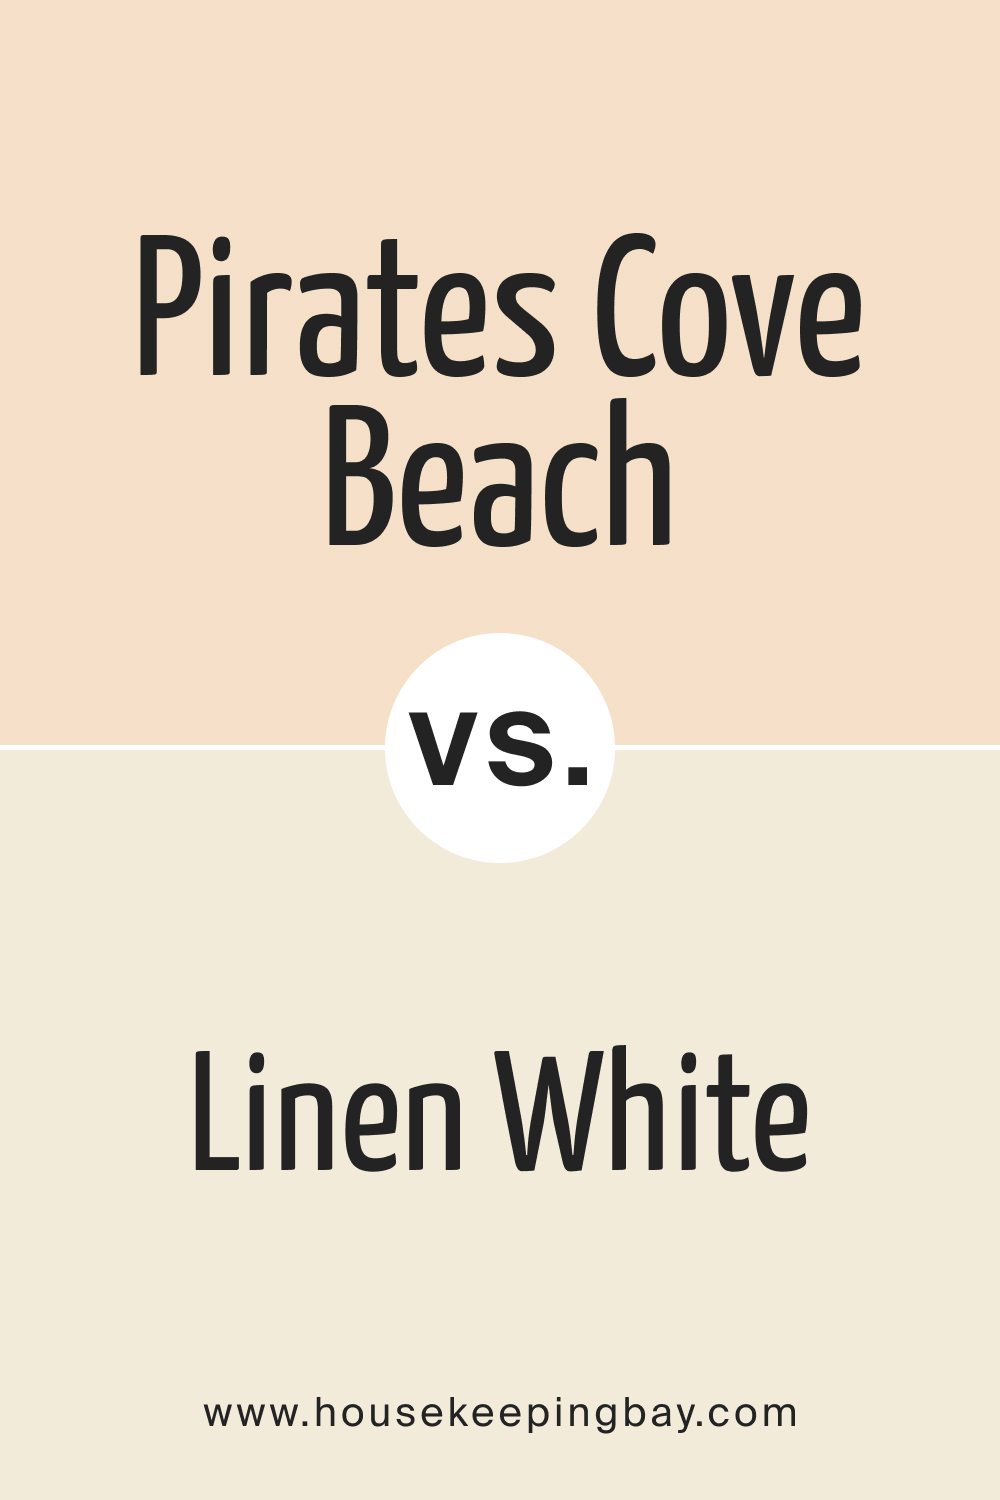 Pirates Cove Beach OC 80 vs. BM Linen White 912